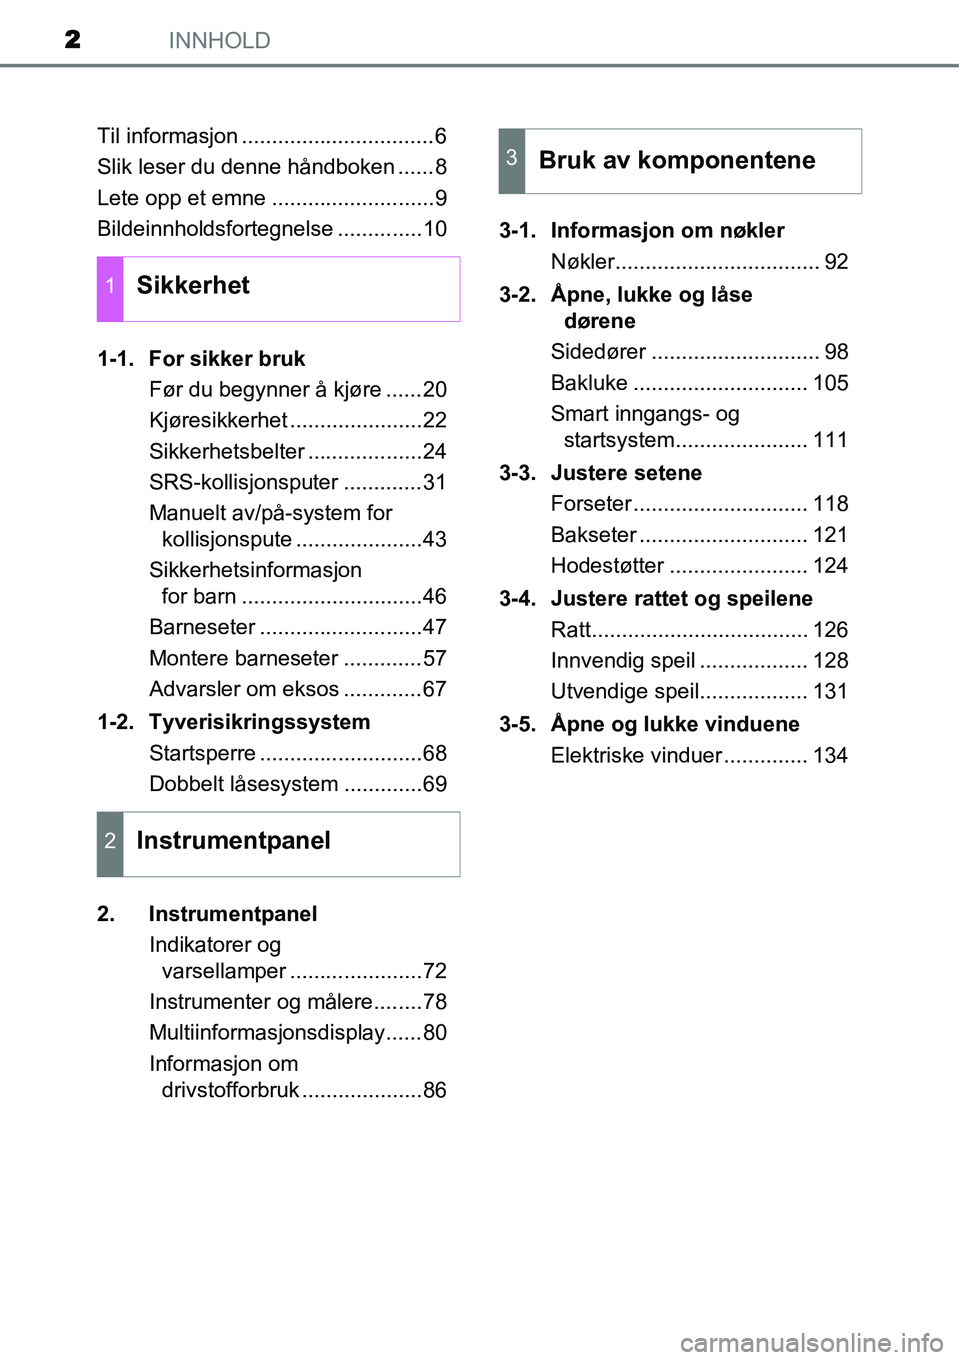 TOYOTA YARIS 2015  Instruksjoner for bruk (in Norwegian) INNHOLD2
Til informasjon ................................6
Slik leser du denne håndboken ......8
Lete opp et emne ...........................9
Bildeinnholdsfortegnelse ..............10
1-1. For sikke